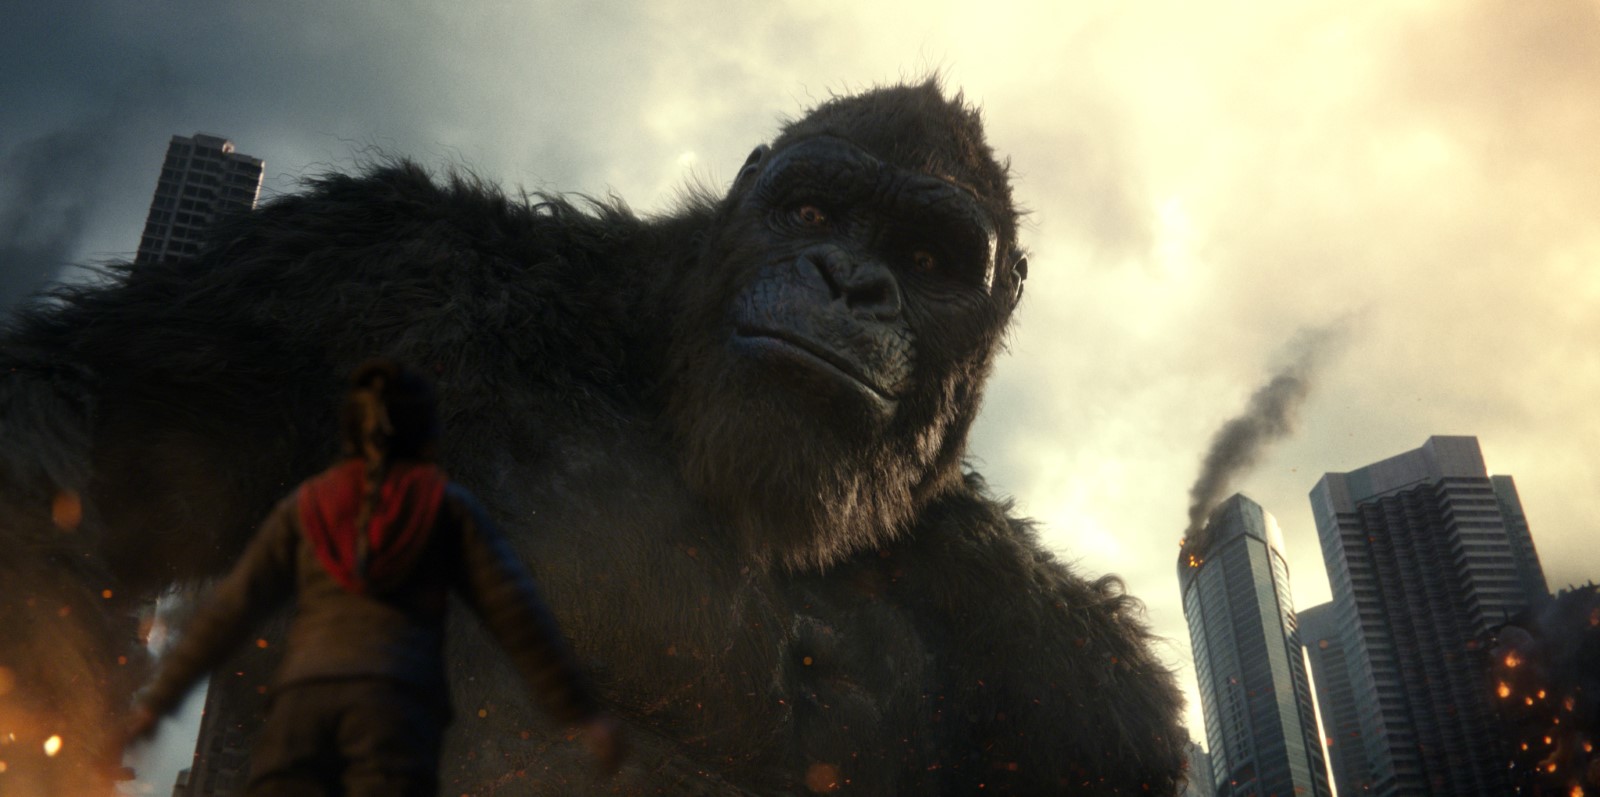 Szenenbild 2 vom Film Godzilla Vs. Kong